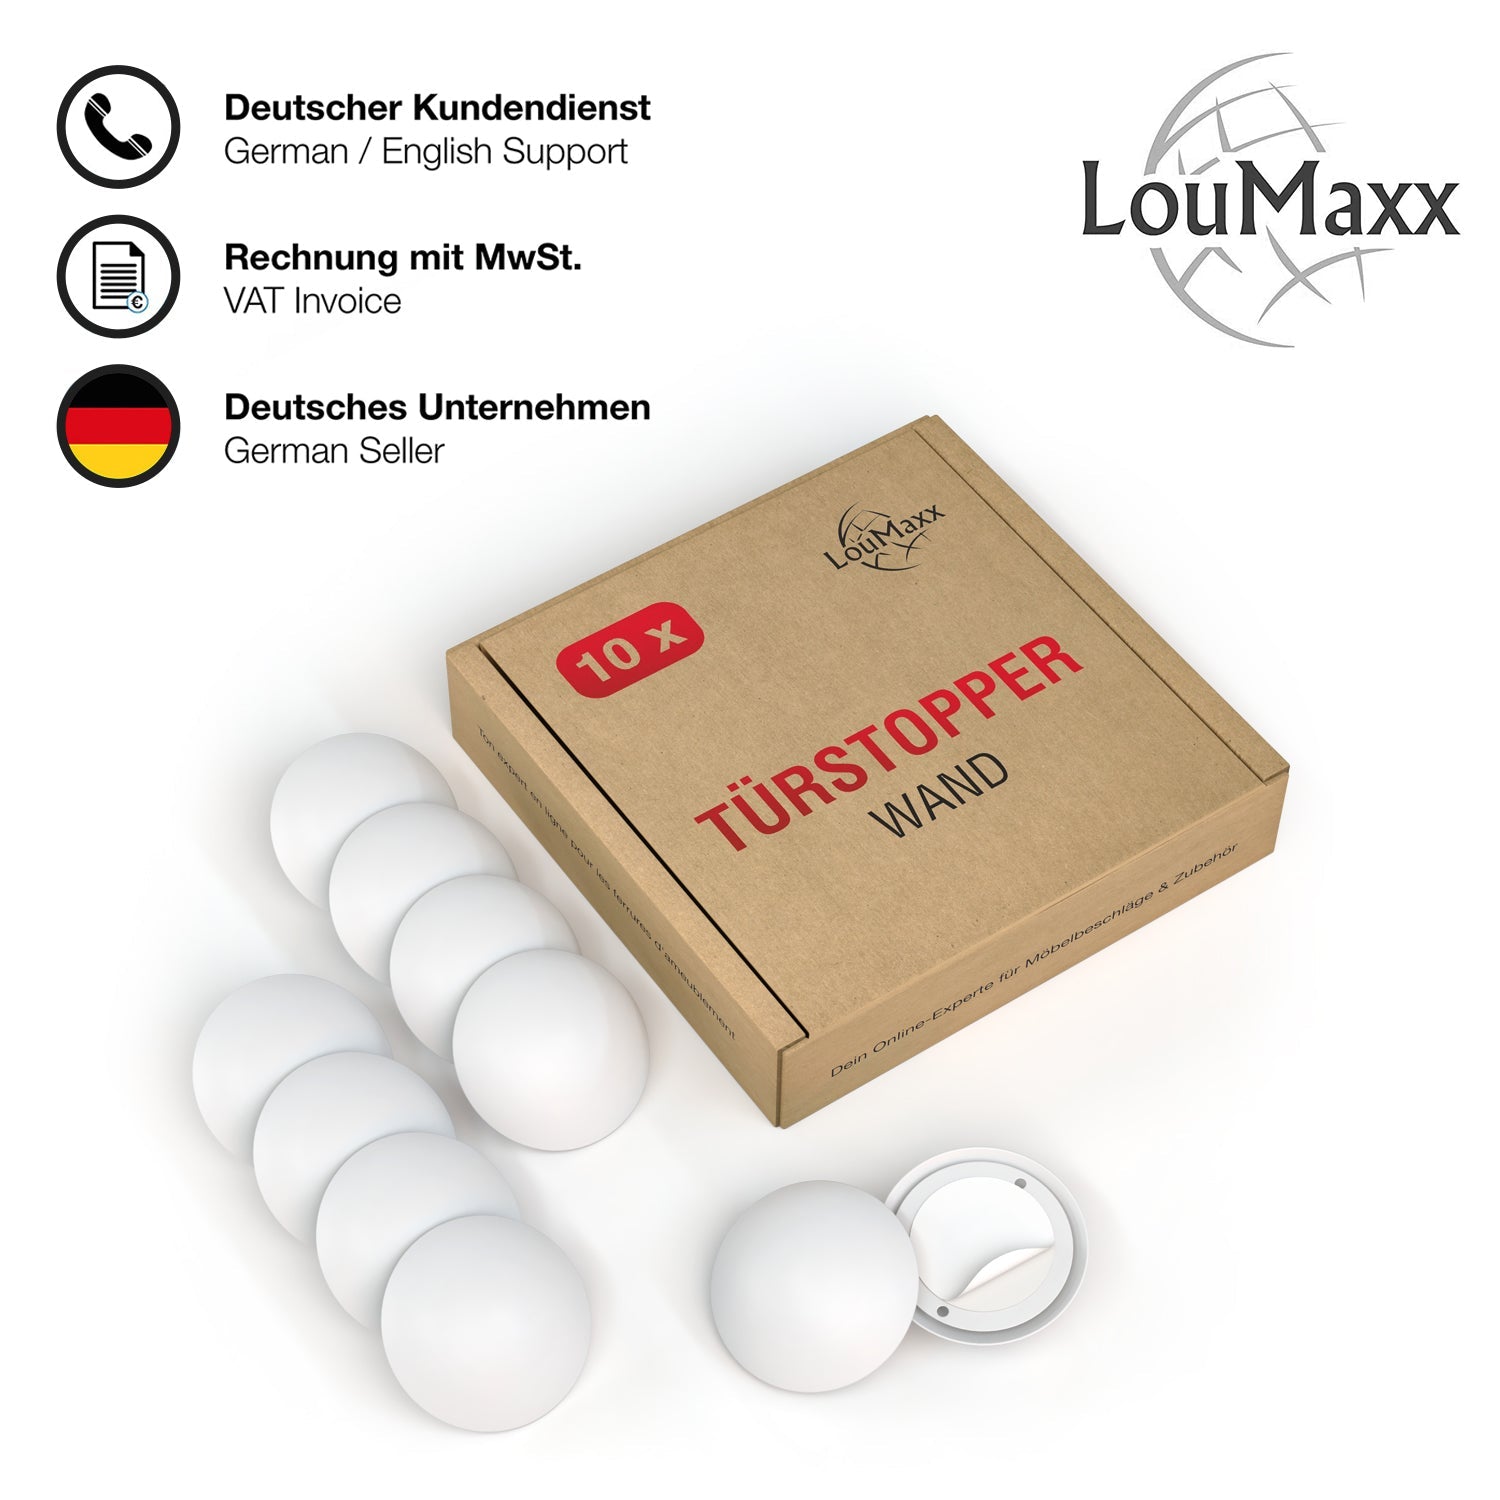 LouMaxx Türpuffer - 2er Set weiße Wandpuffer Ø 40 mm - Anschlagpuffer